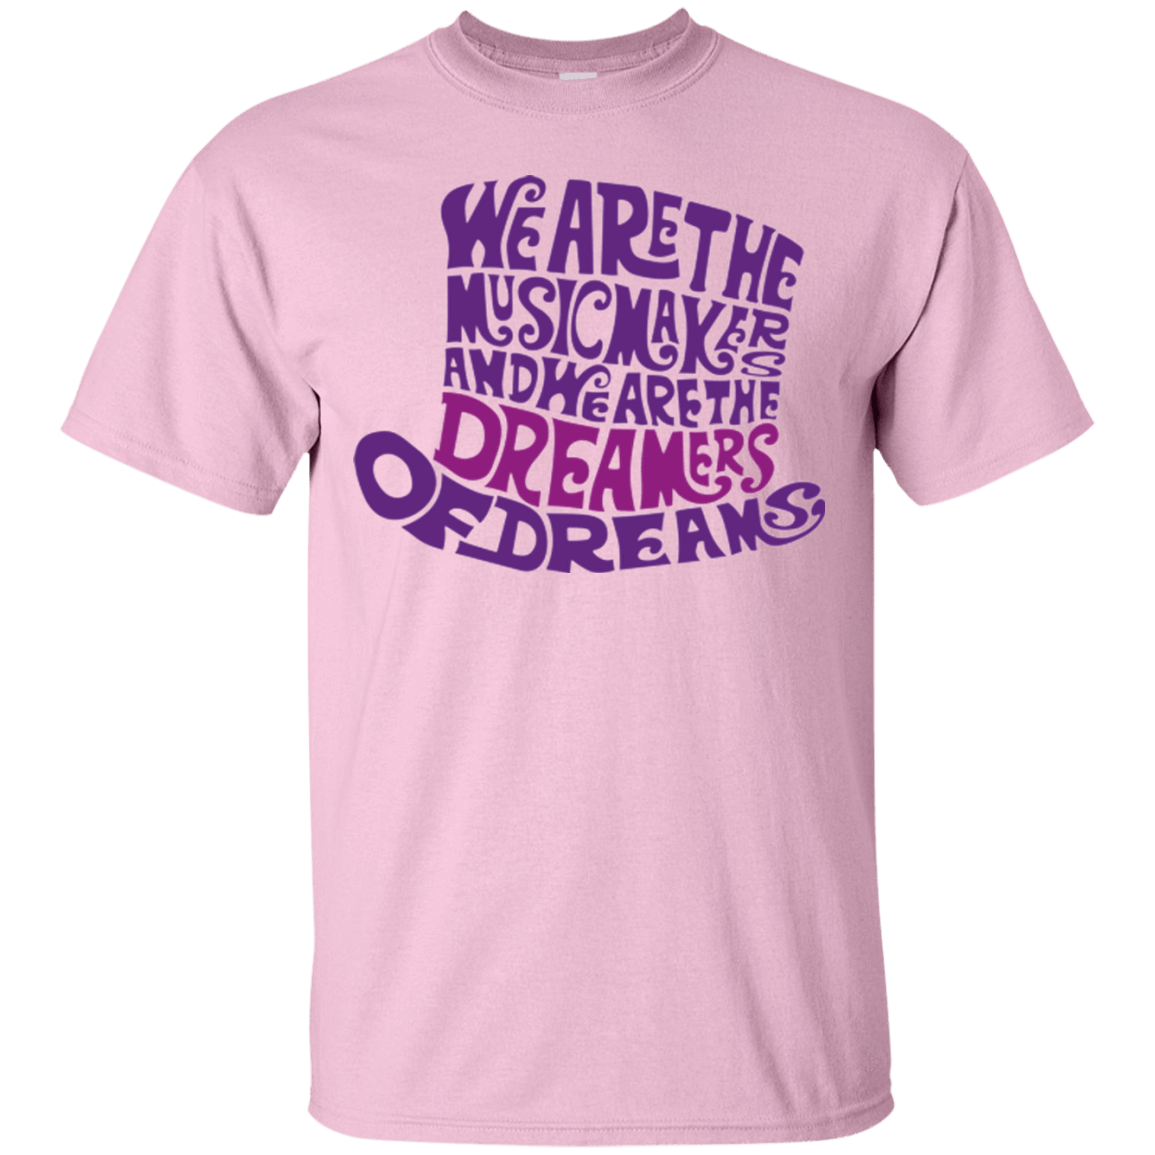 T-Shirts Light Pink / Small Wonka Purple T-Shirt